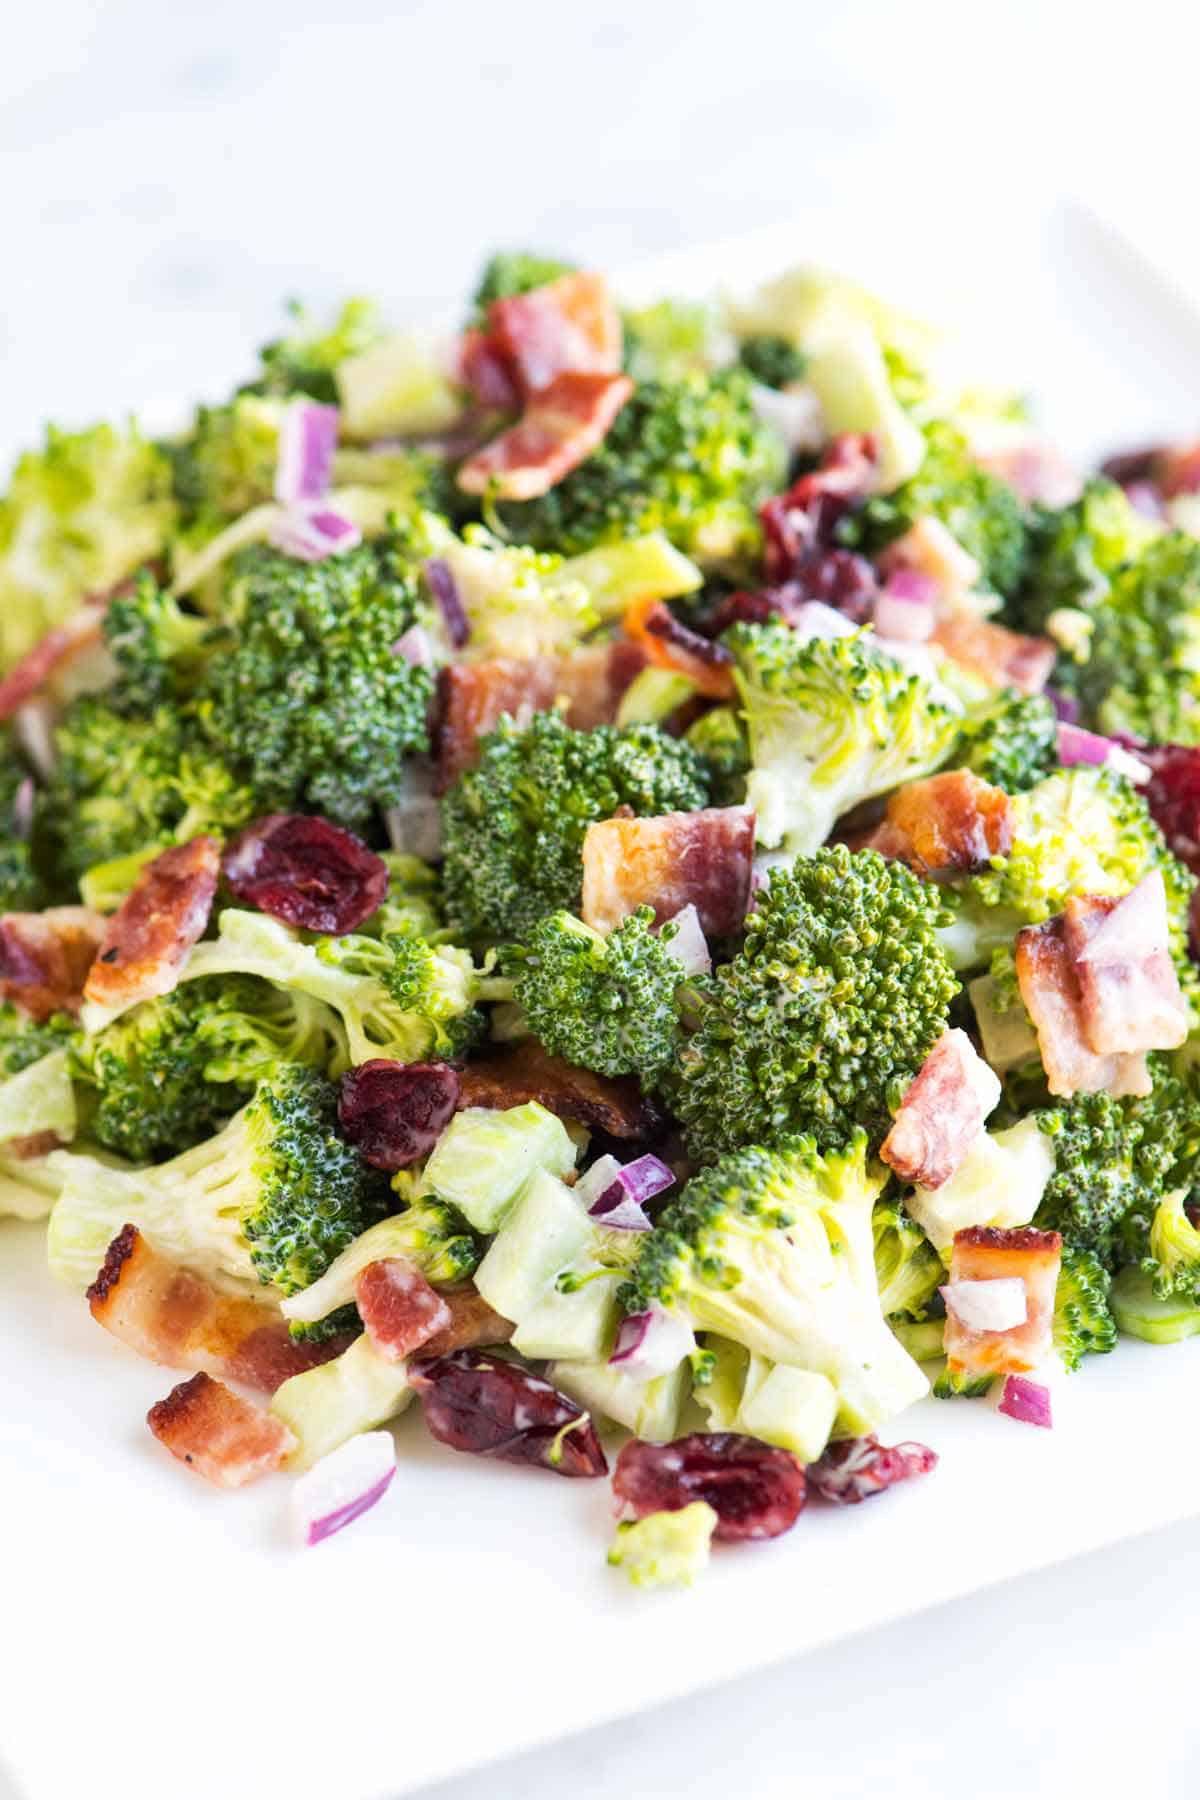 Easy Broccoli Salad Recipe with Bacon